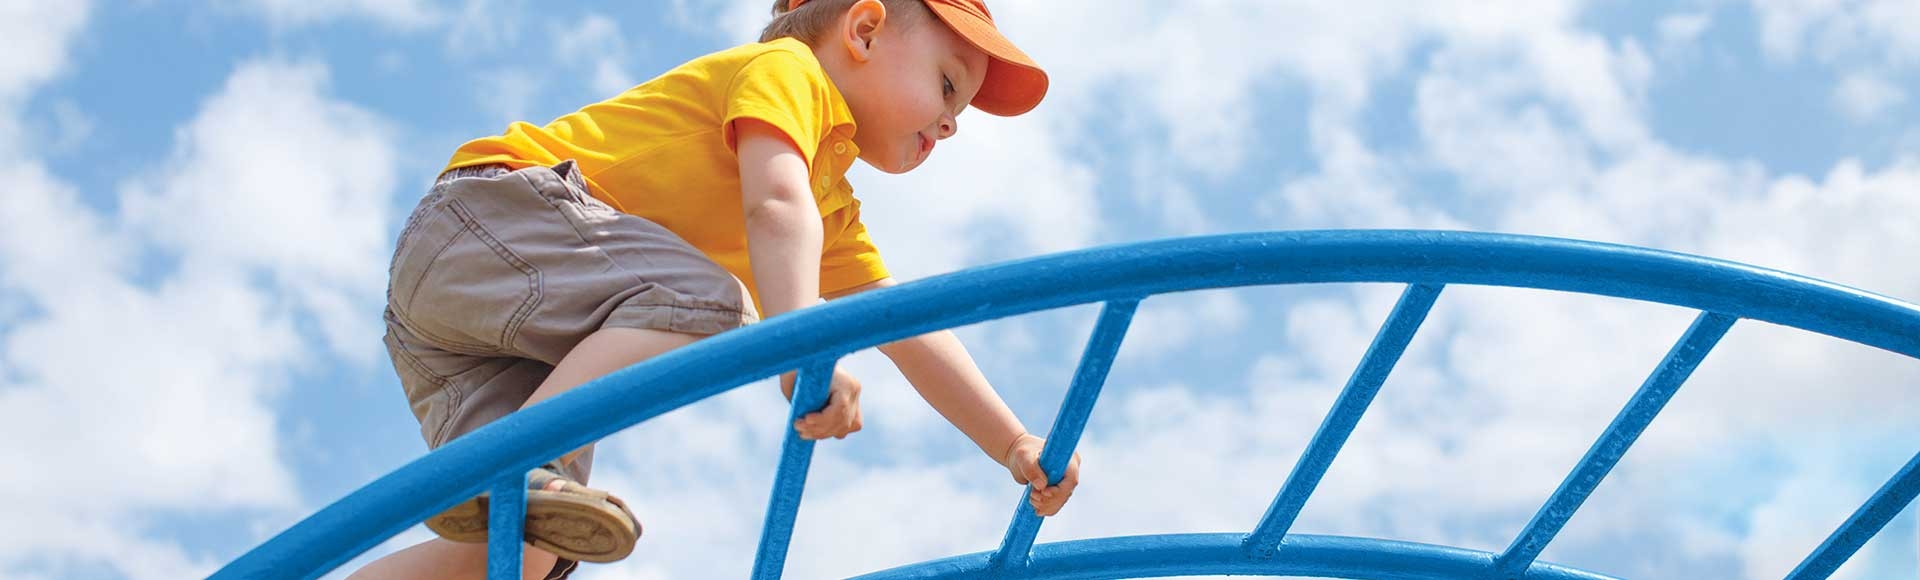 little boy climbing an arch climber playground